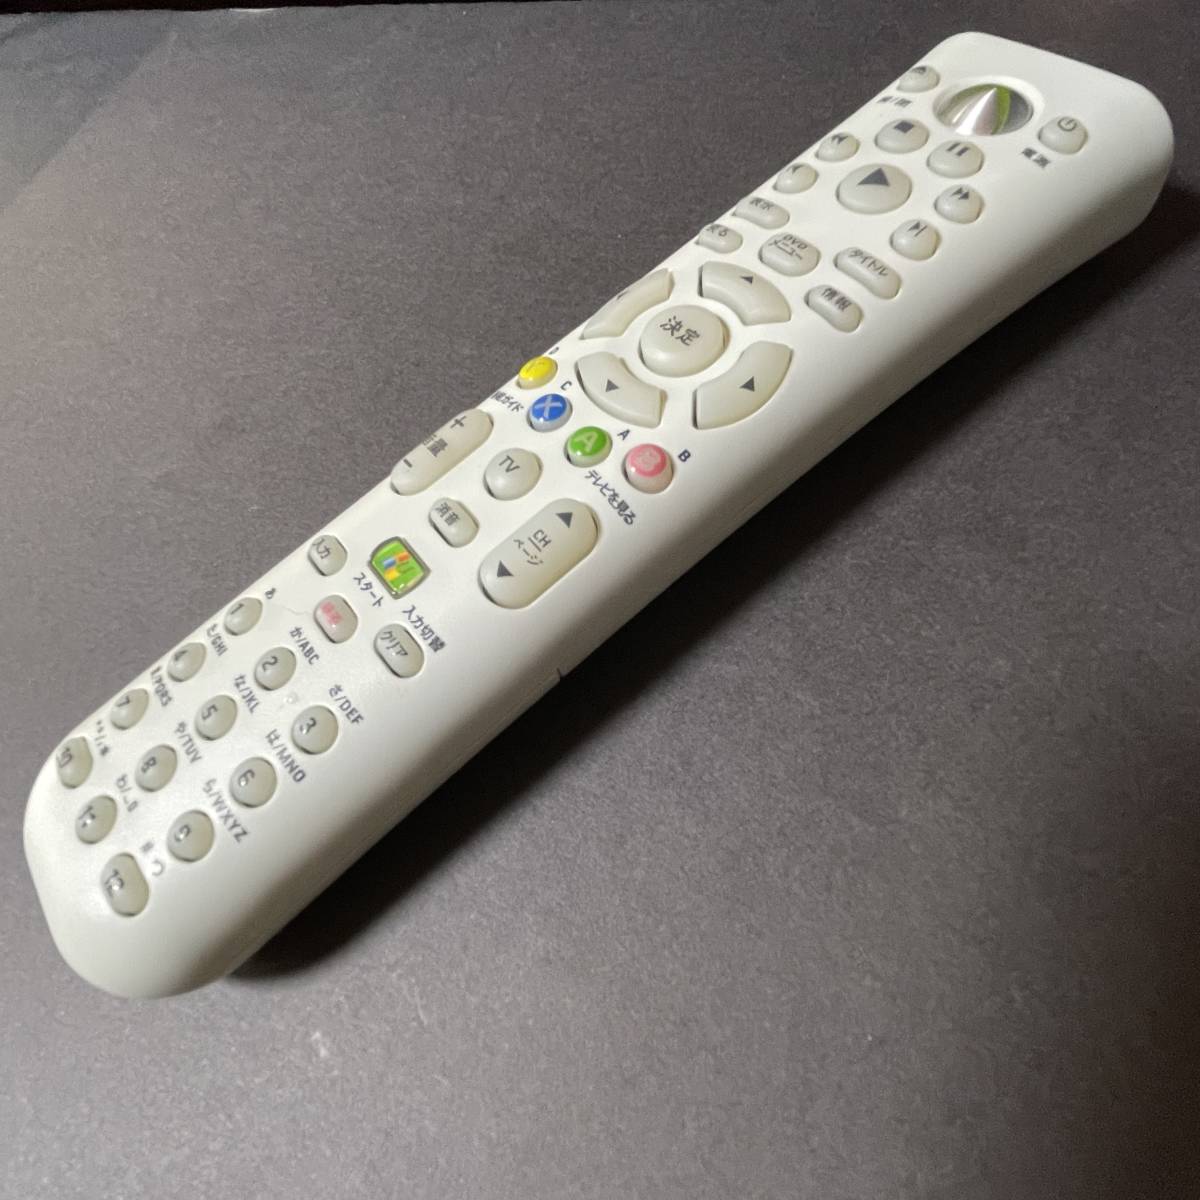 Microsoft Microsoft Xbox 360 media remote control X806290-003 *5